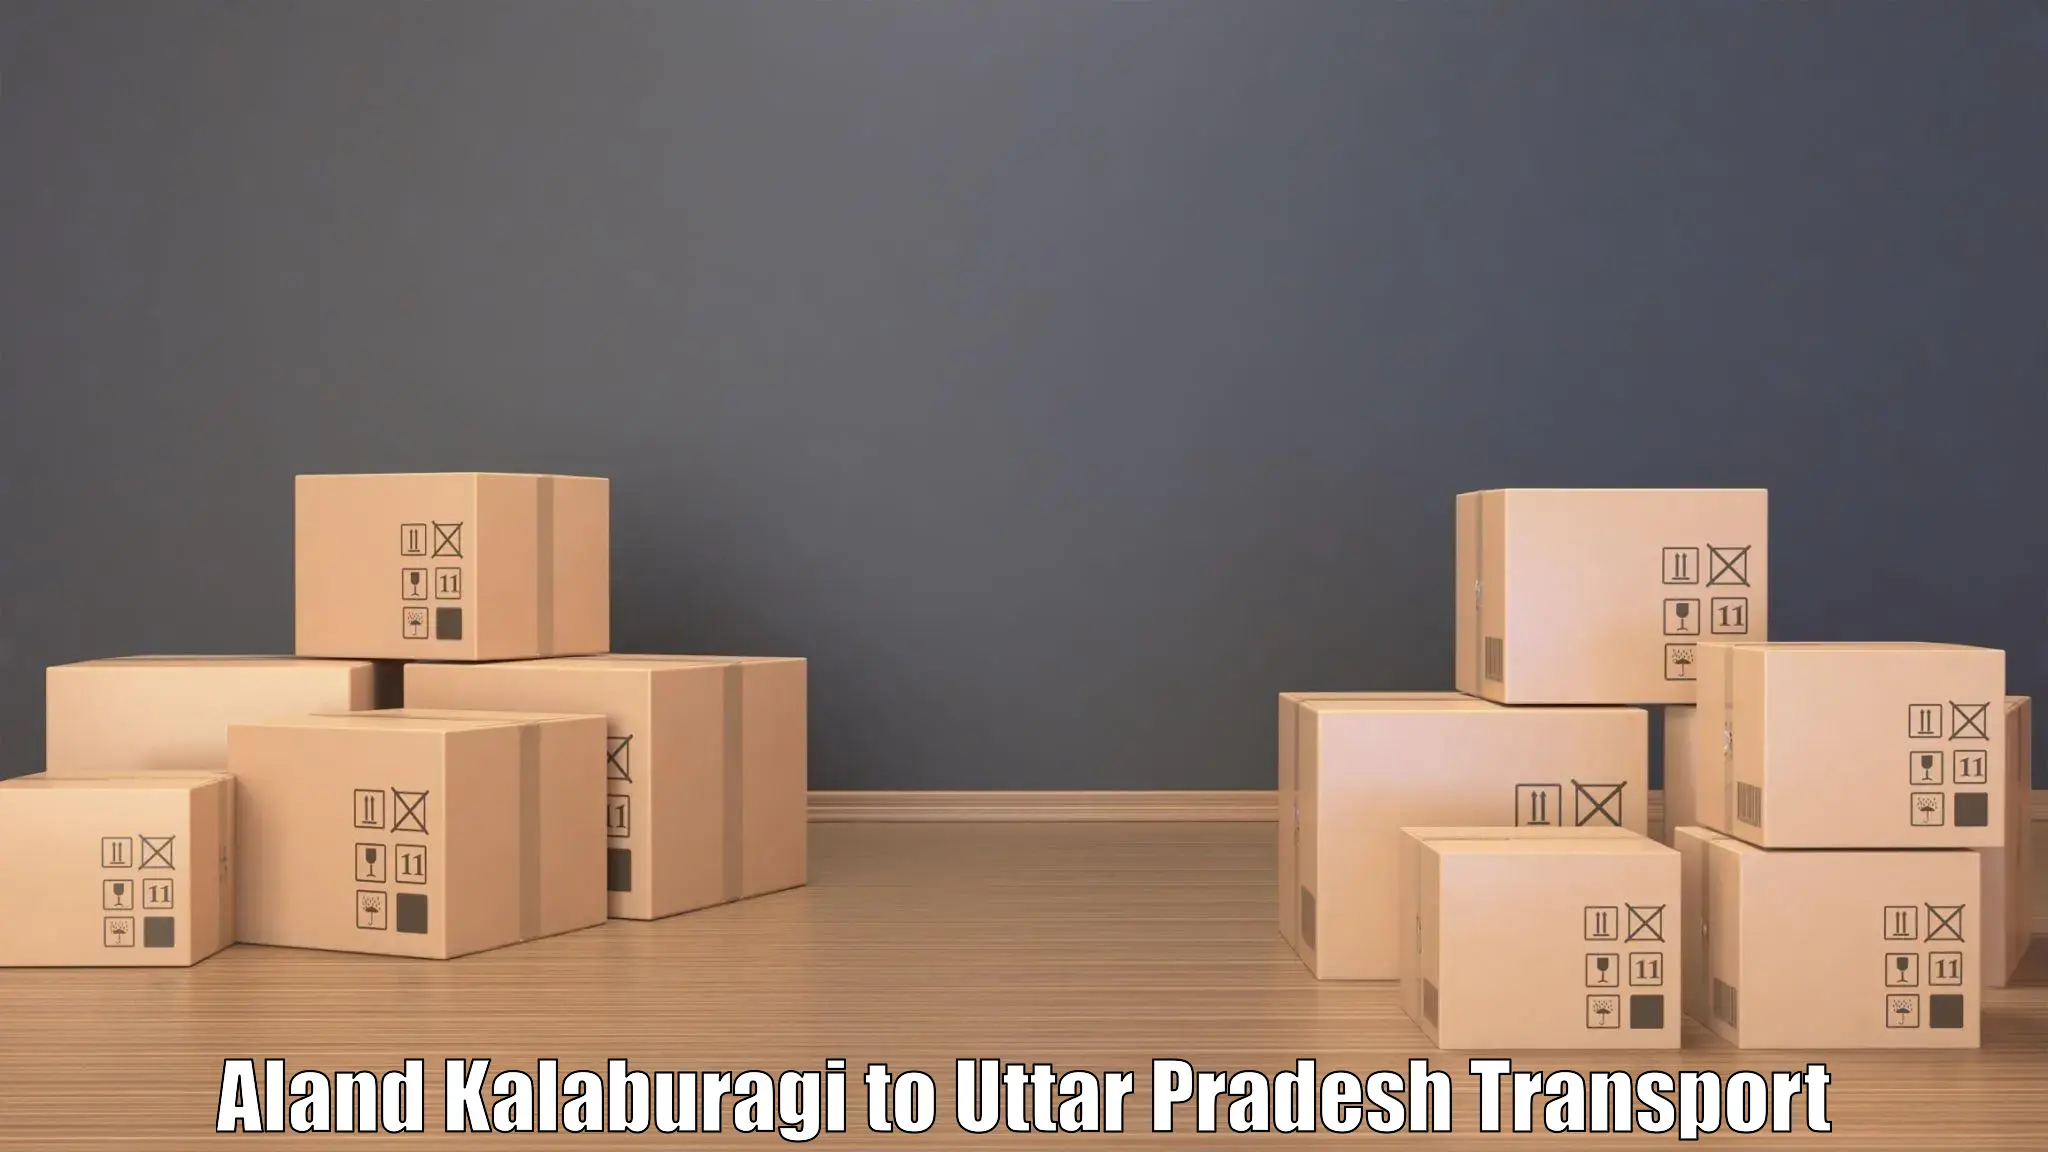 Container transportation services Aland Kalaburagi to Mahasi